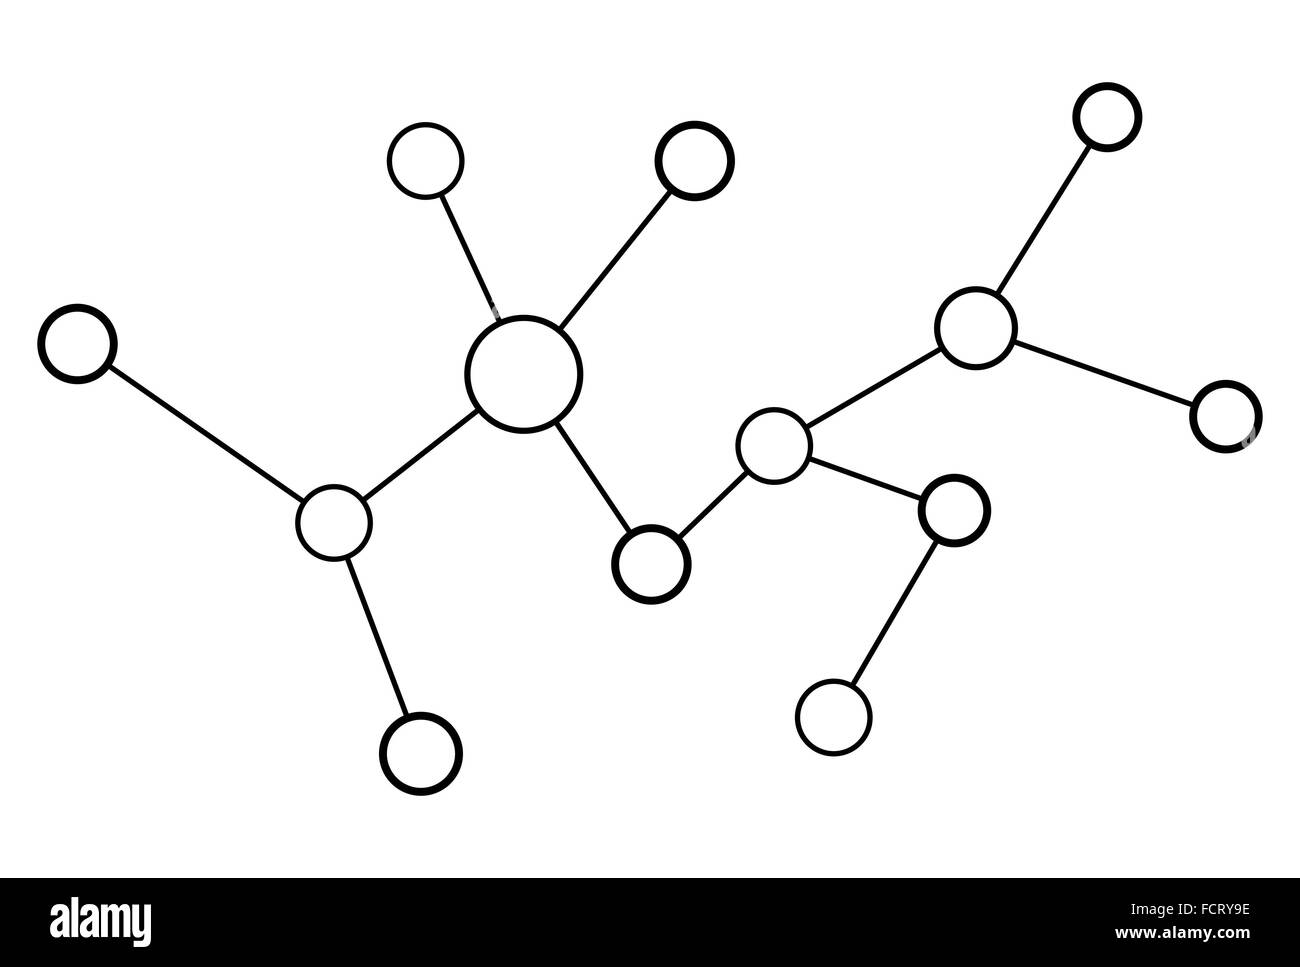 Vektor-Netzwerk Kreis abstrakt auf weißem Hintergrund Stock Vektor